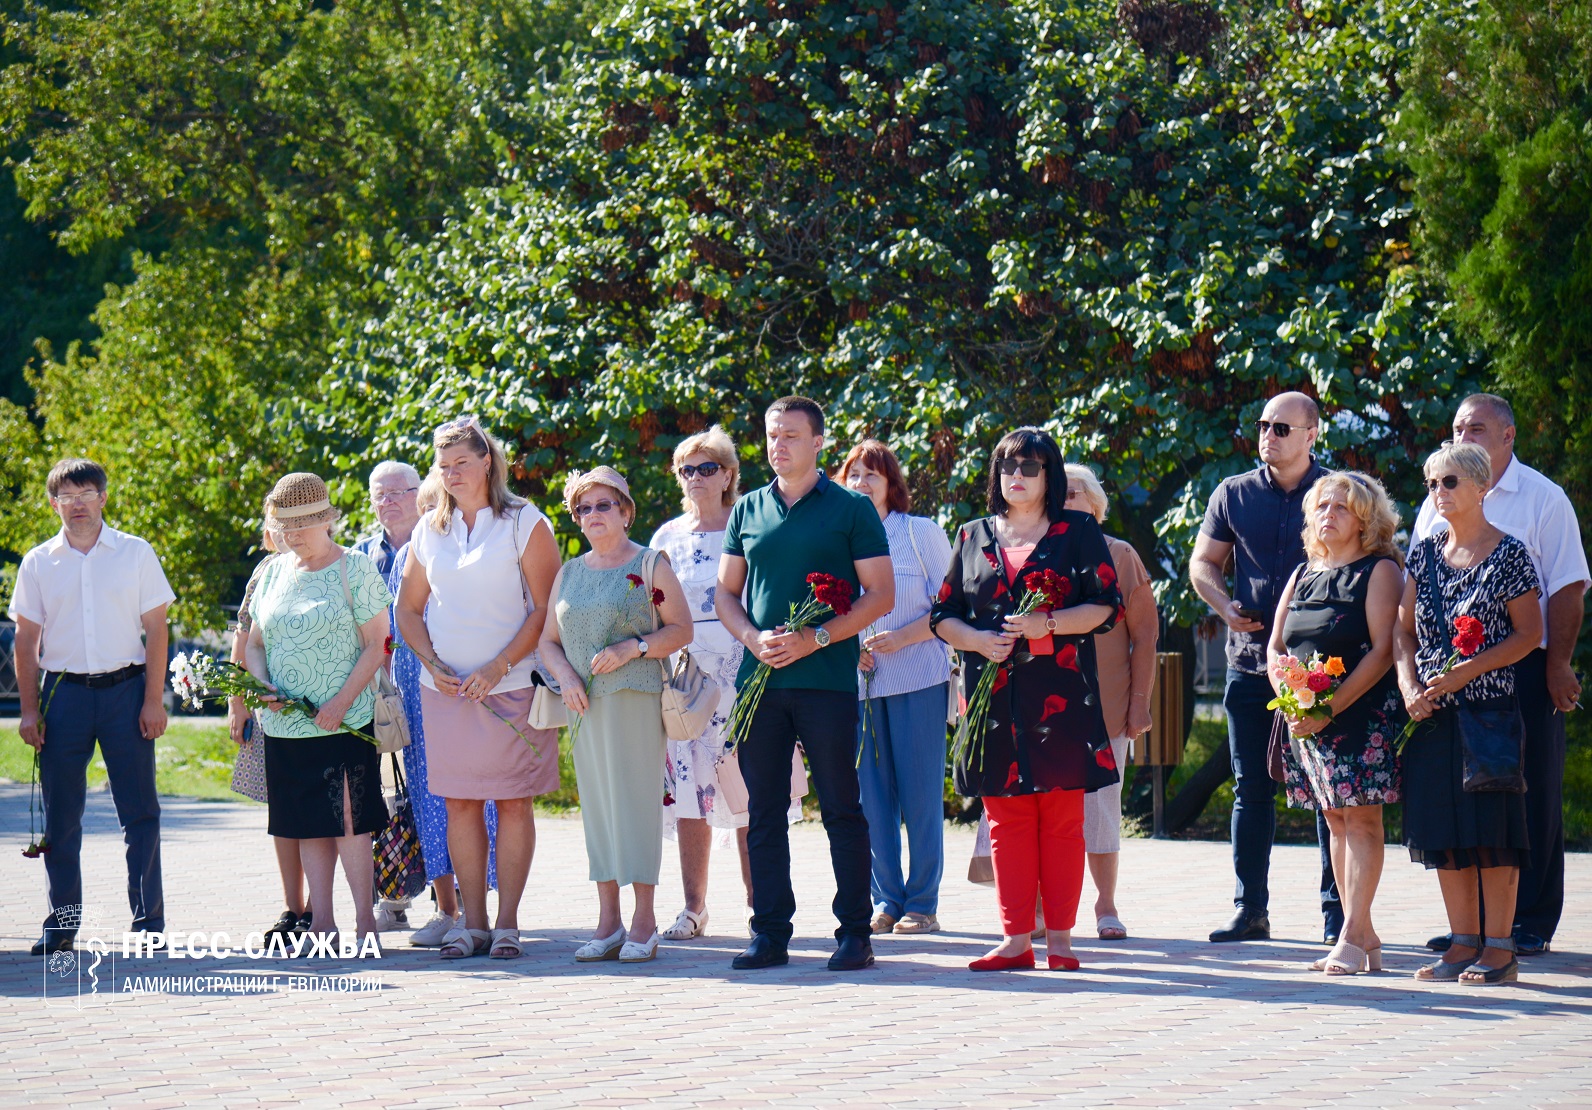 18 августа – День памяти жертв депортации немцев из Крыма